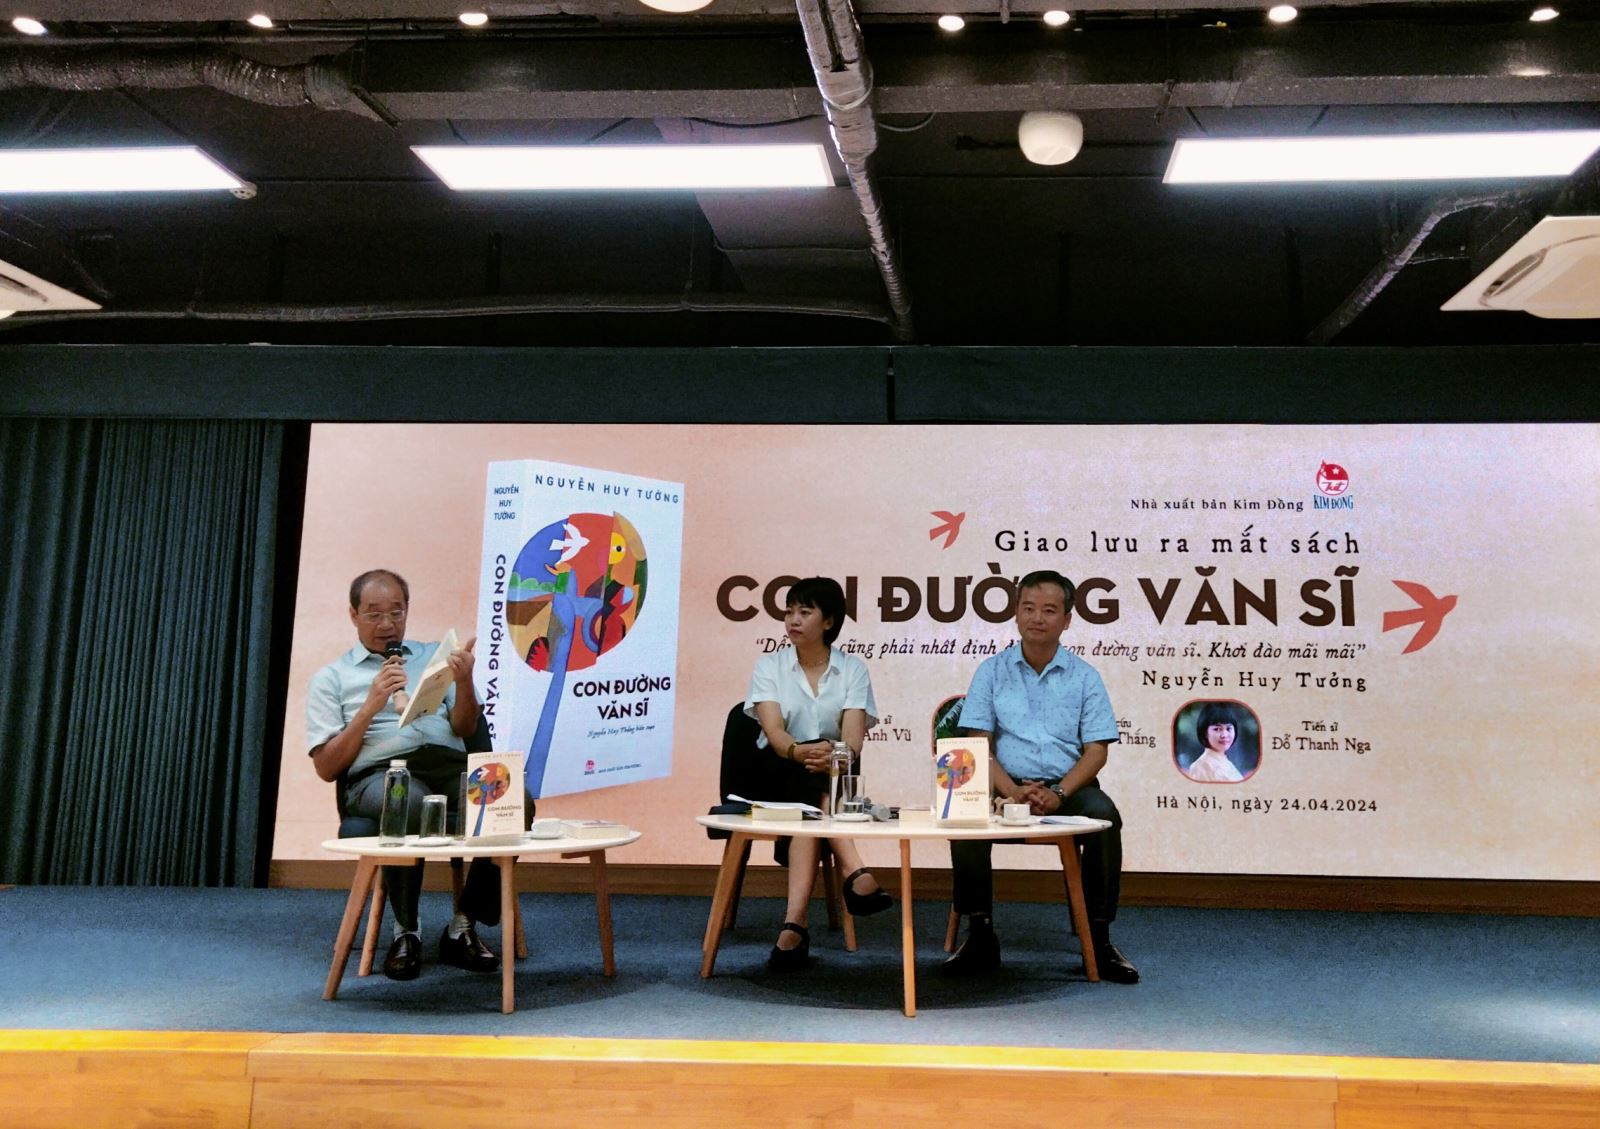 Nhân Ngày Sách và Văn hóa đọc Việt Nam, ngày 24-4-2024, Nxb Kim Đồng đã tổ chức chương trình giao lưu và ra mắt sách “Con đường văn sĩ” - nhật ký của nhà văn Nguyễn Huy Tưởng.